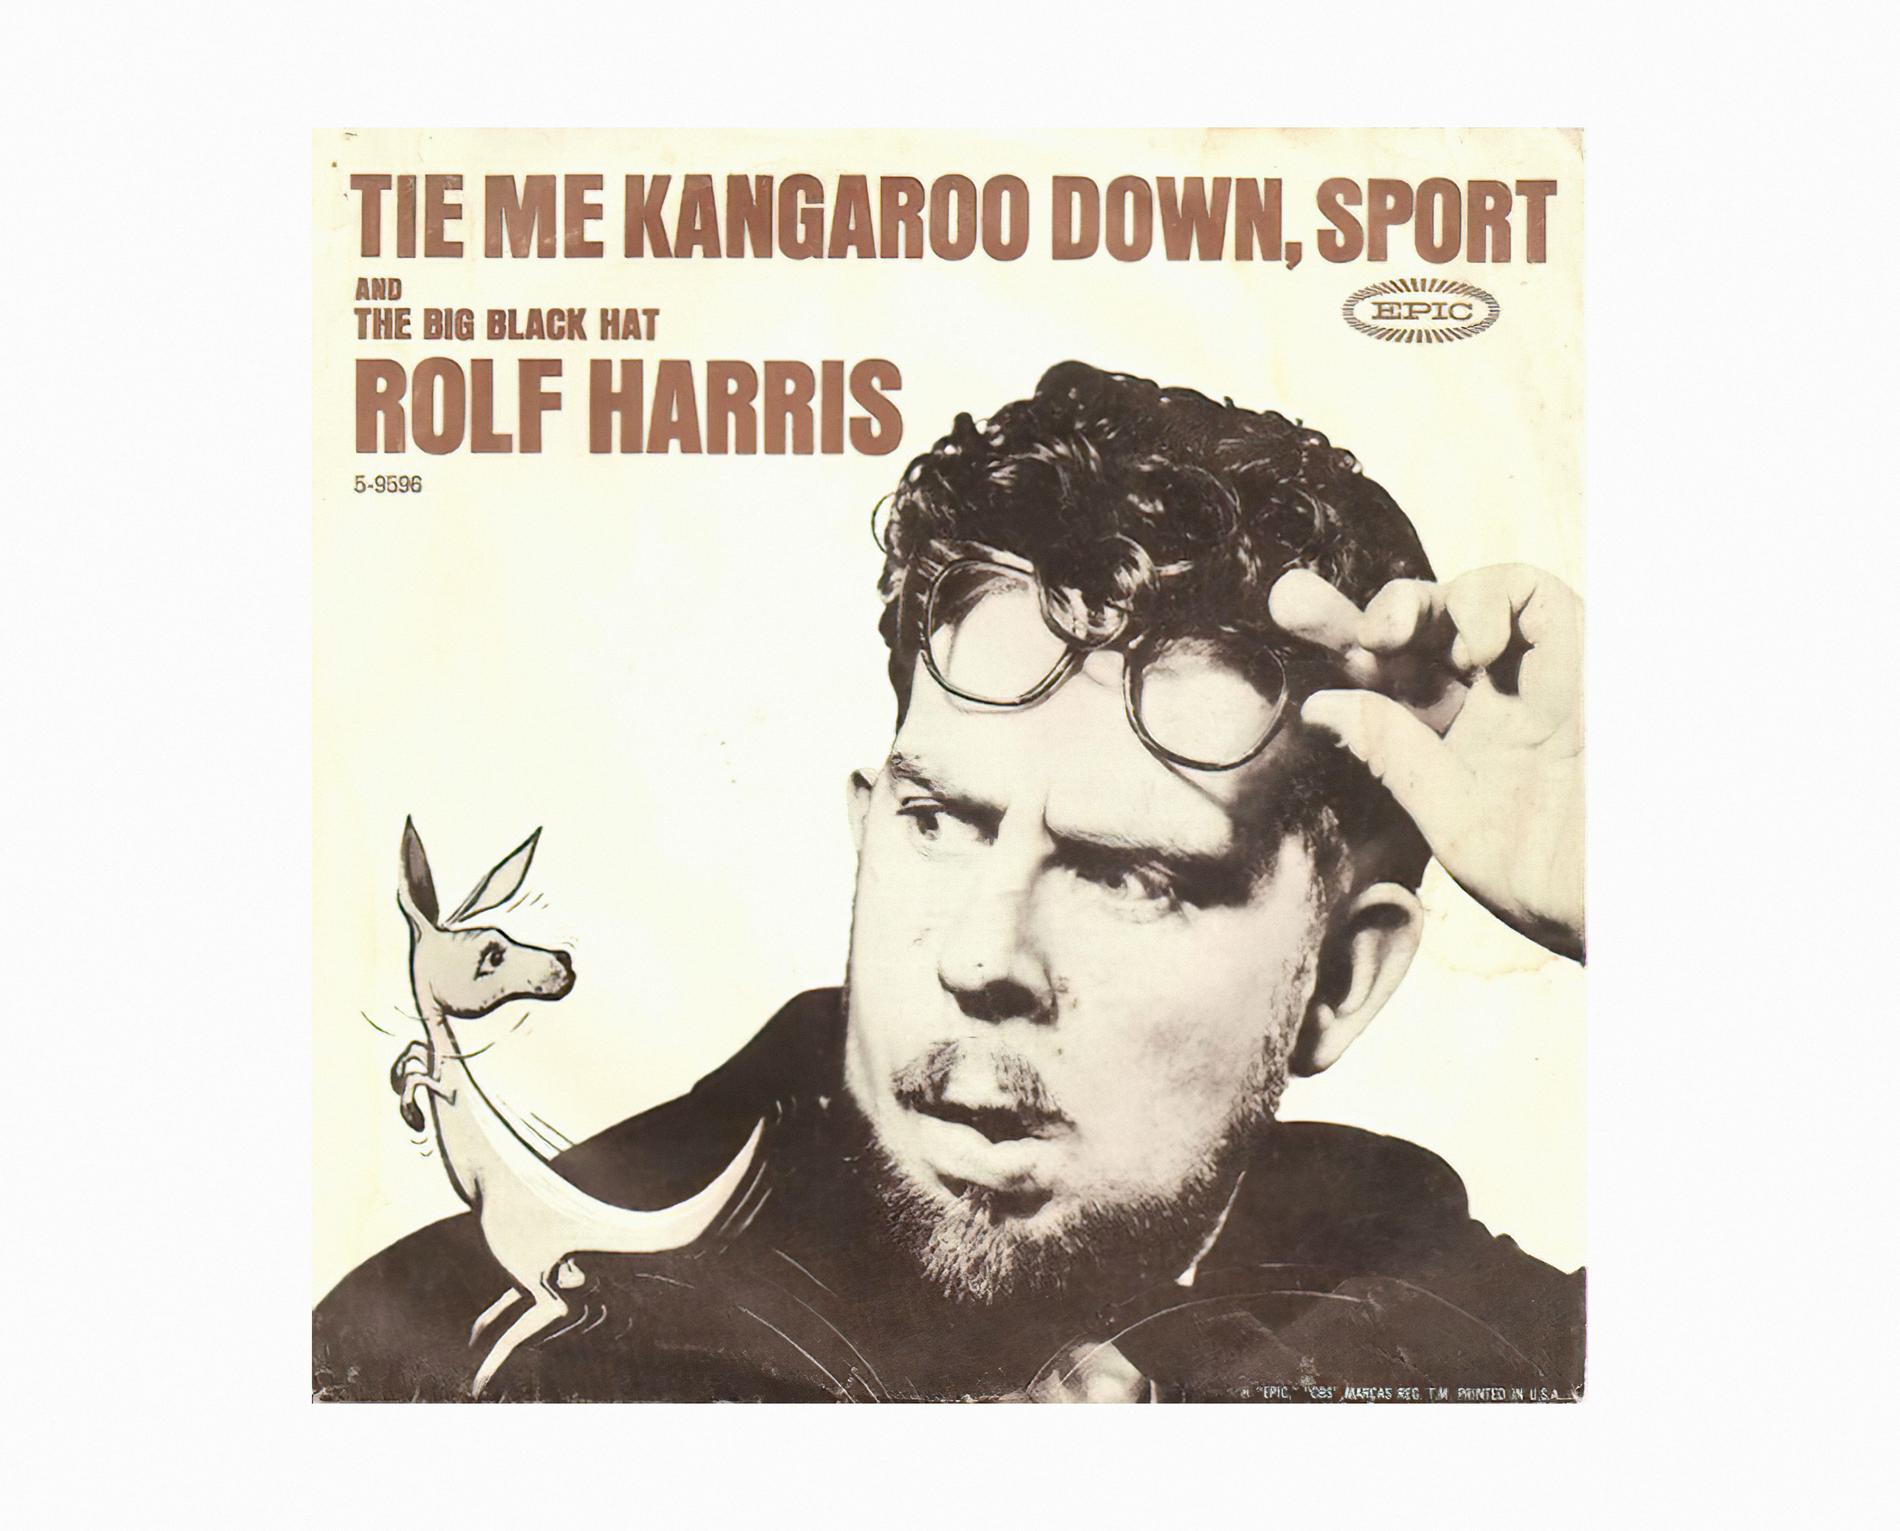 En Rolf Harris-vinylskiva från 1963.